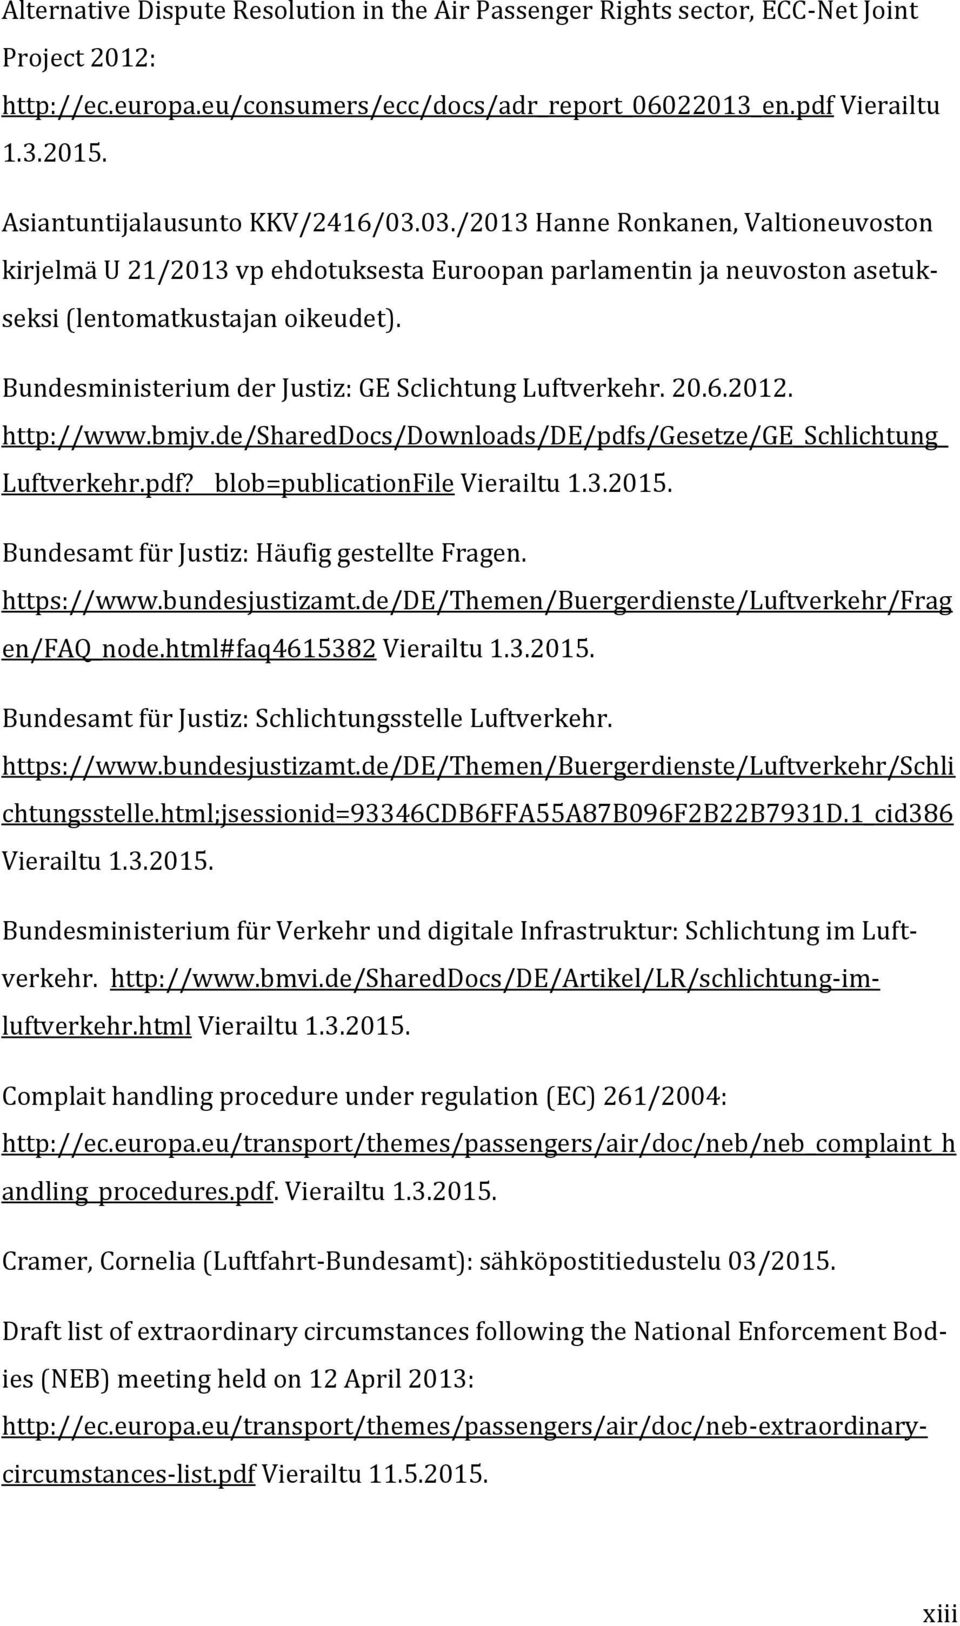 Bundesministerium der Justiz: GE Sclichtung Luftverkehr. 20.6.2012. http://www.bmjv.de/shareddocs/downloads/de/pdfs/gesetze/ge_schlichtung_ Luftverkehr.pdf? blob=publicationfile Vierailtu 1.3.2015.